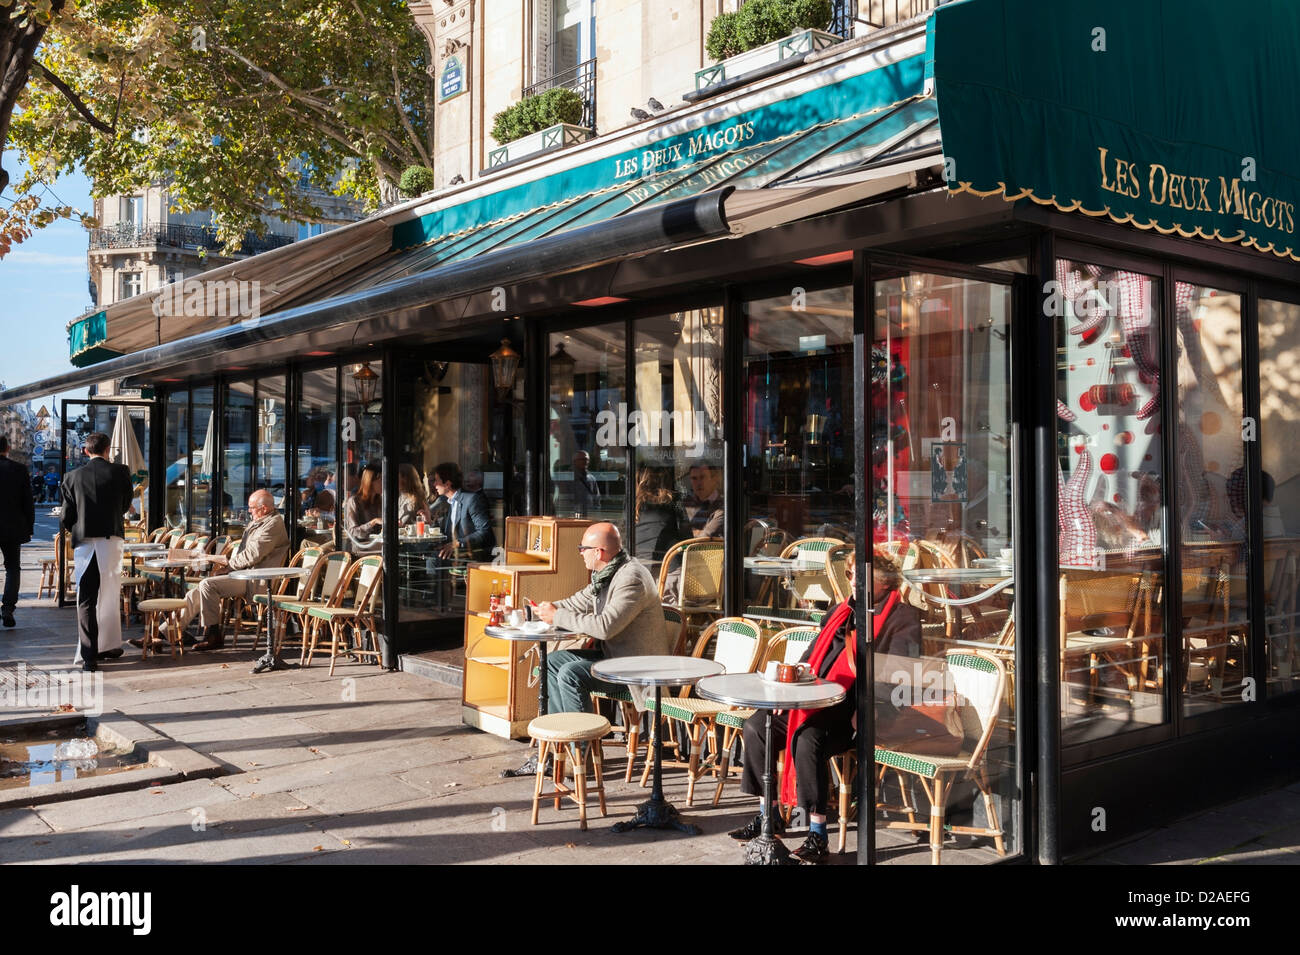 Los clientes en una soleada mañana de otoño en el famoso café parisino Les Deux Magots en Saint-Germain-des-Prés. Foto de stock